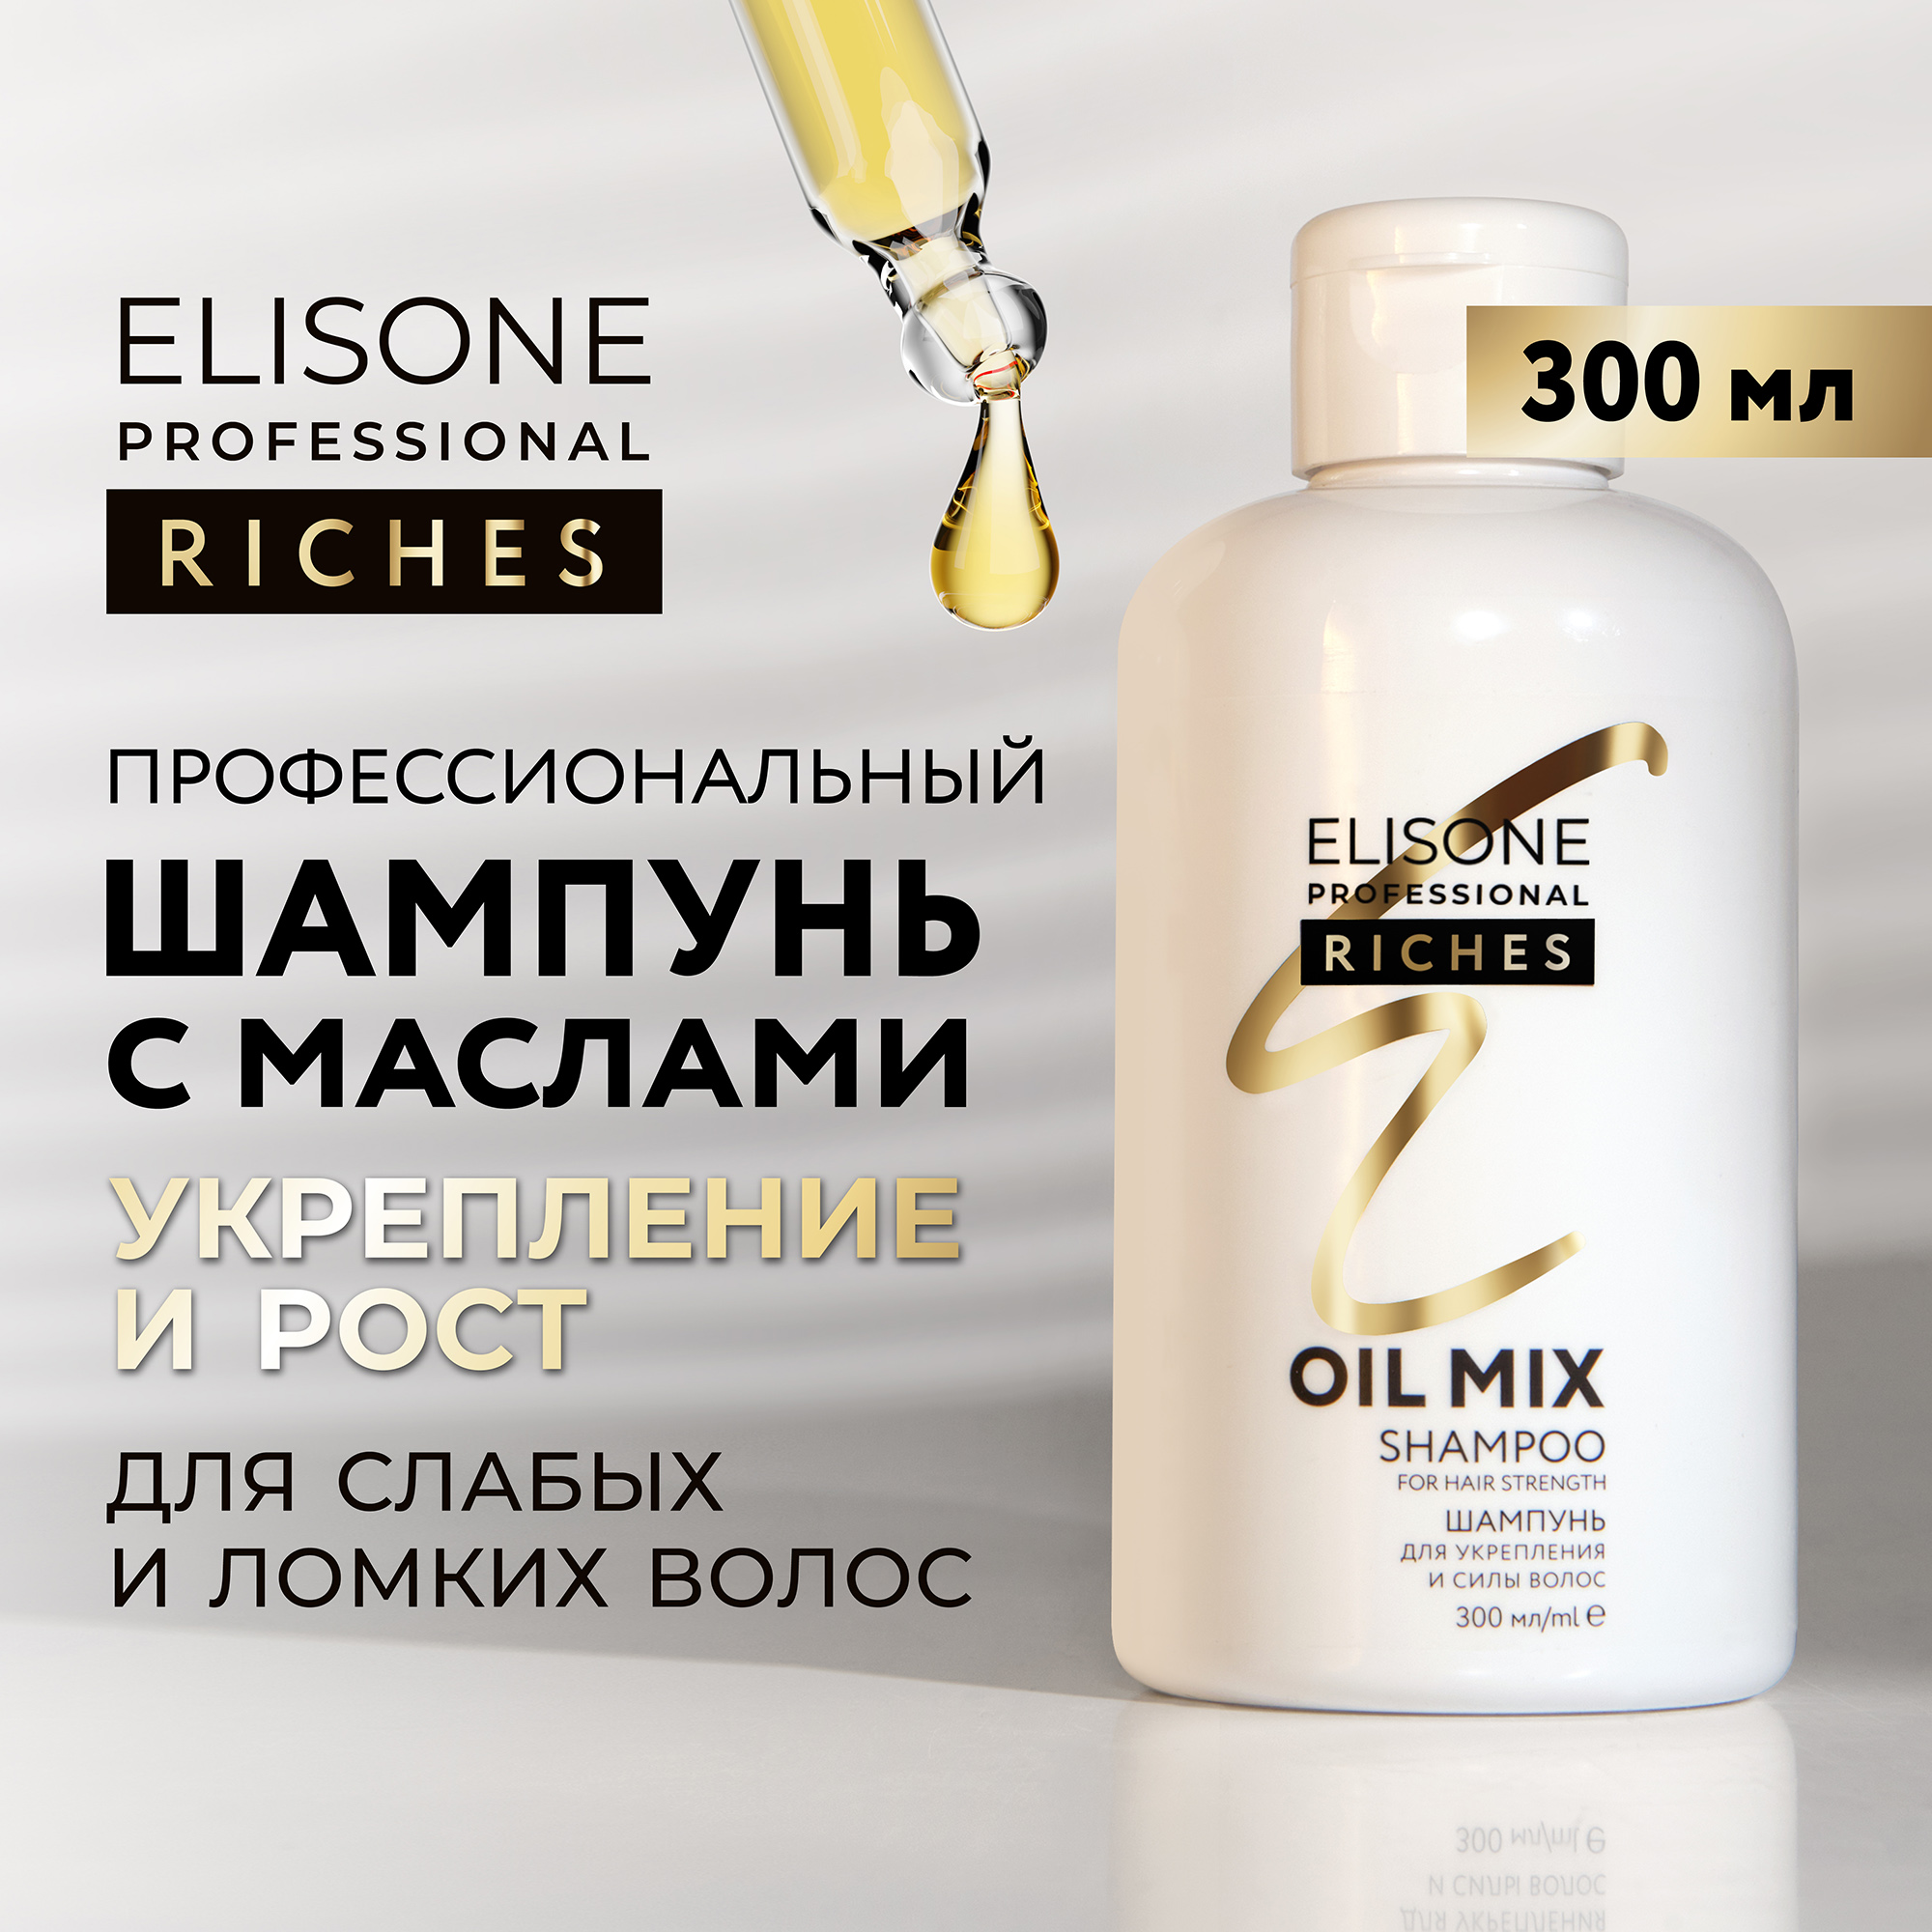 Шампунь RICHES для укрепления волос ELISONE PROFESSIONAL 300 мл